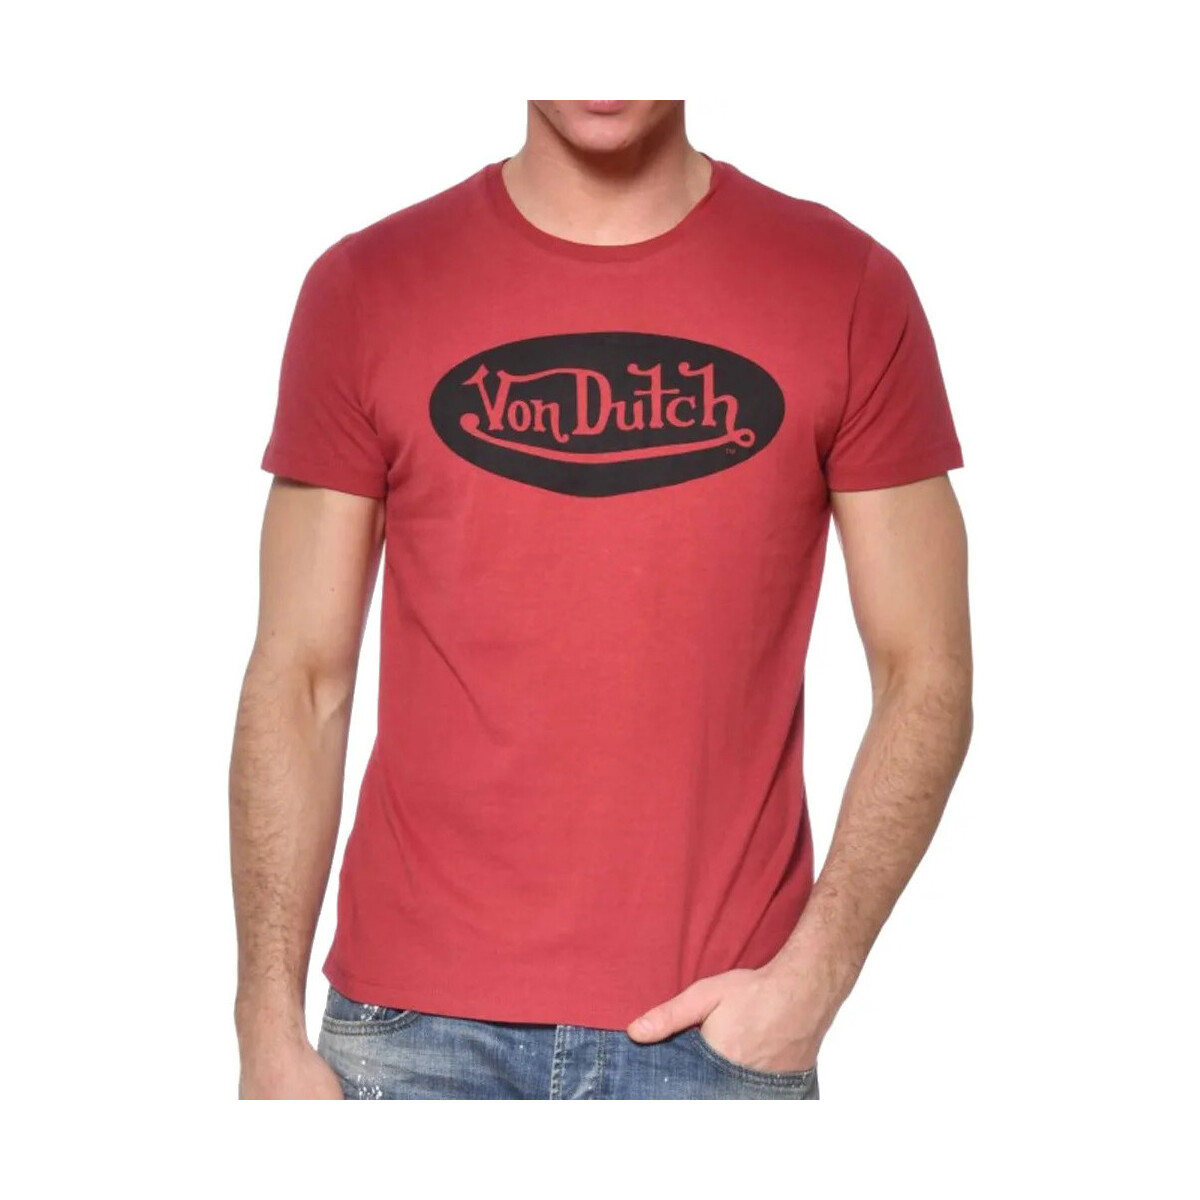 Textiel Heren T-shirts korte mouwen Von Dutch  Rood